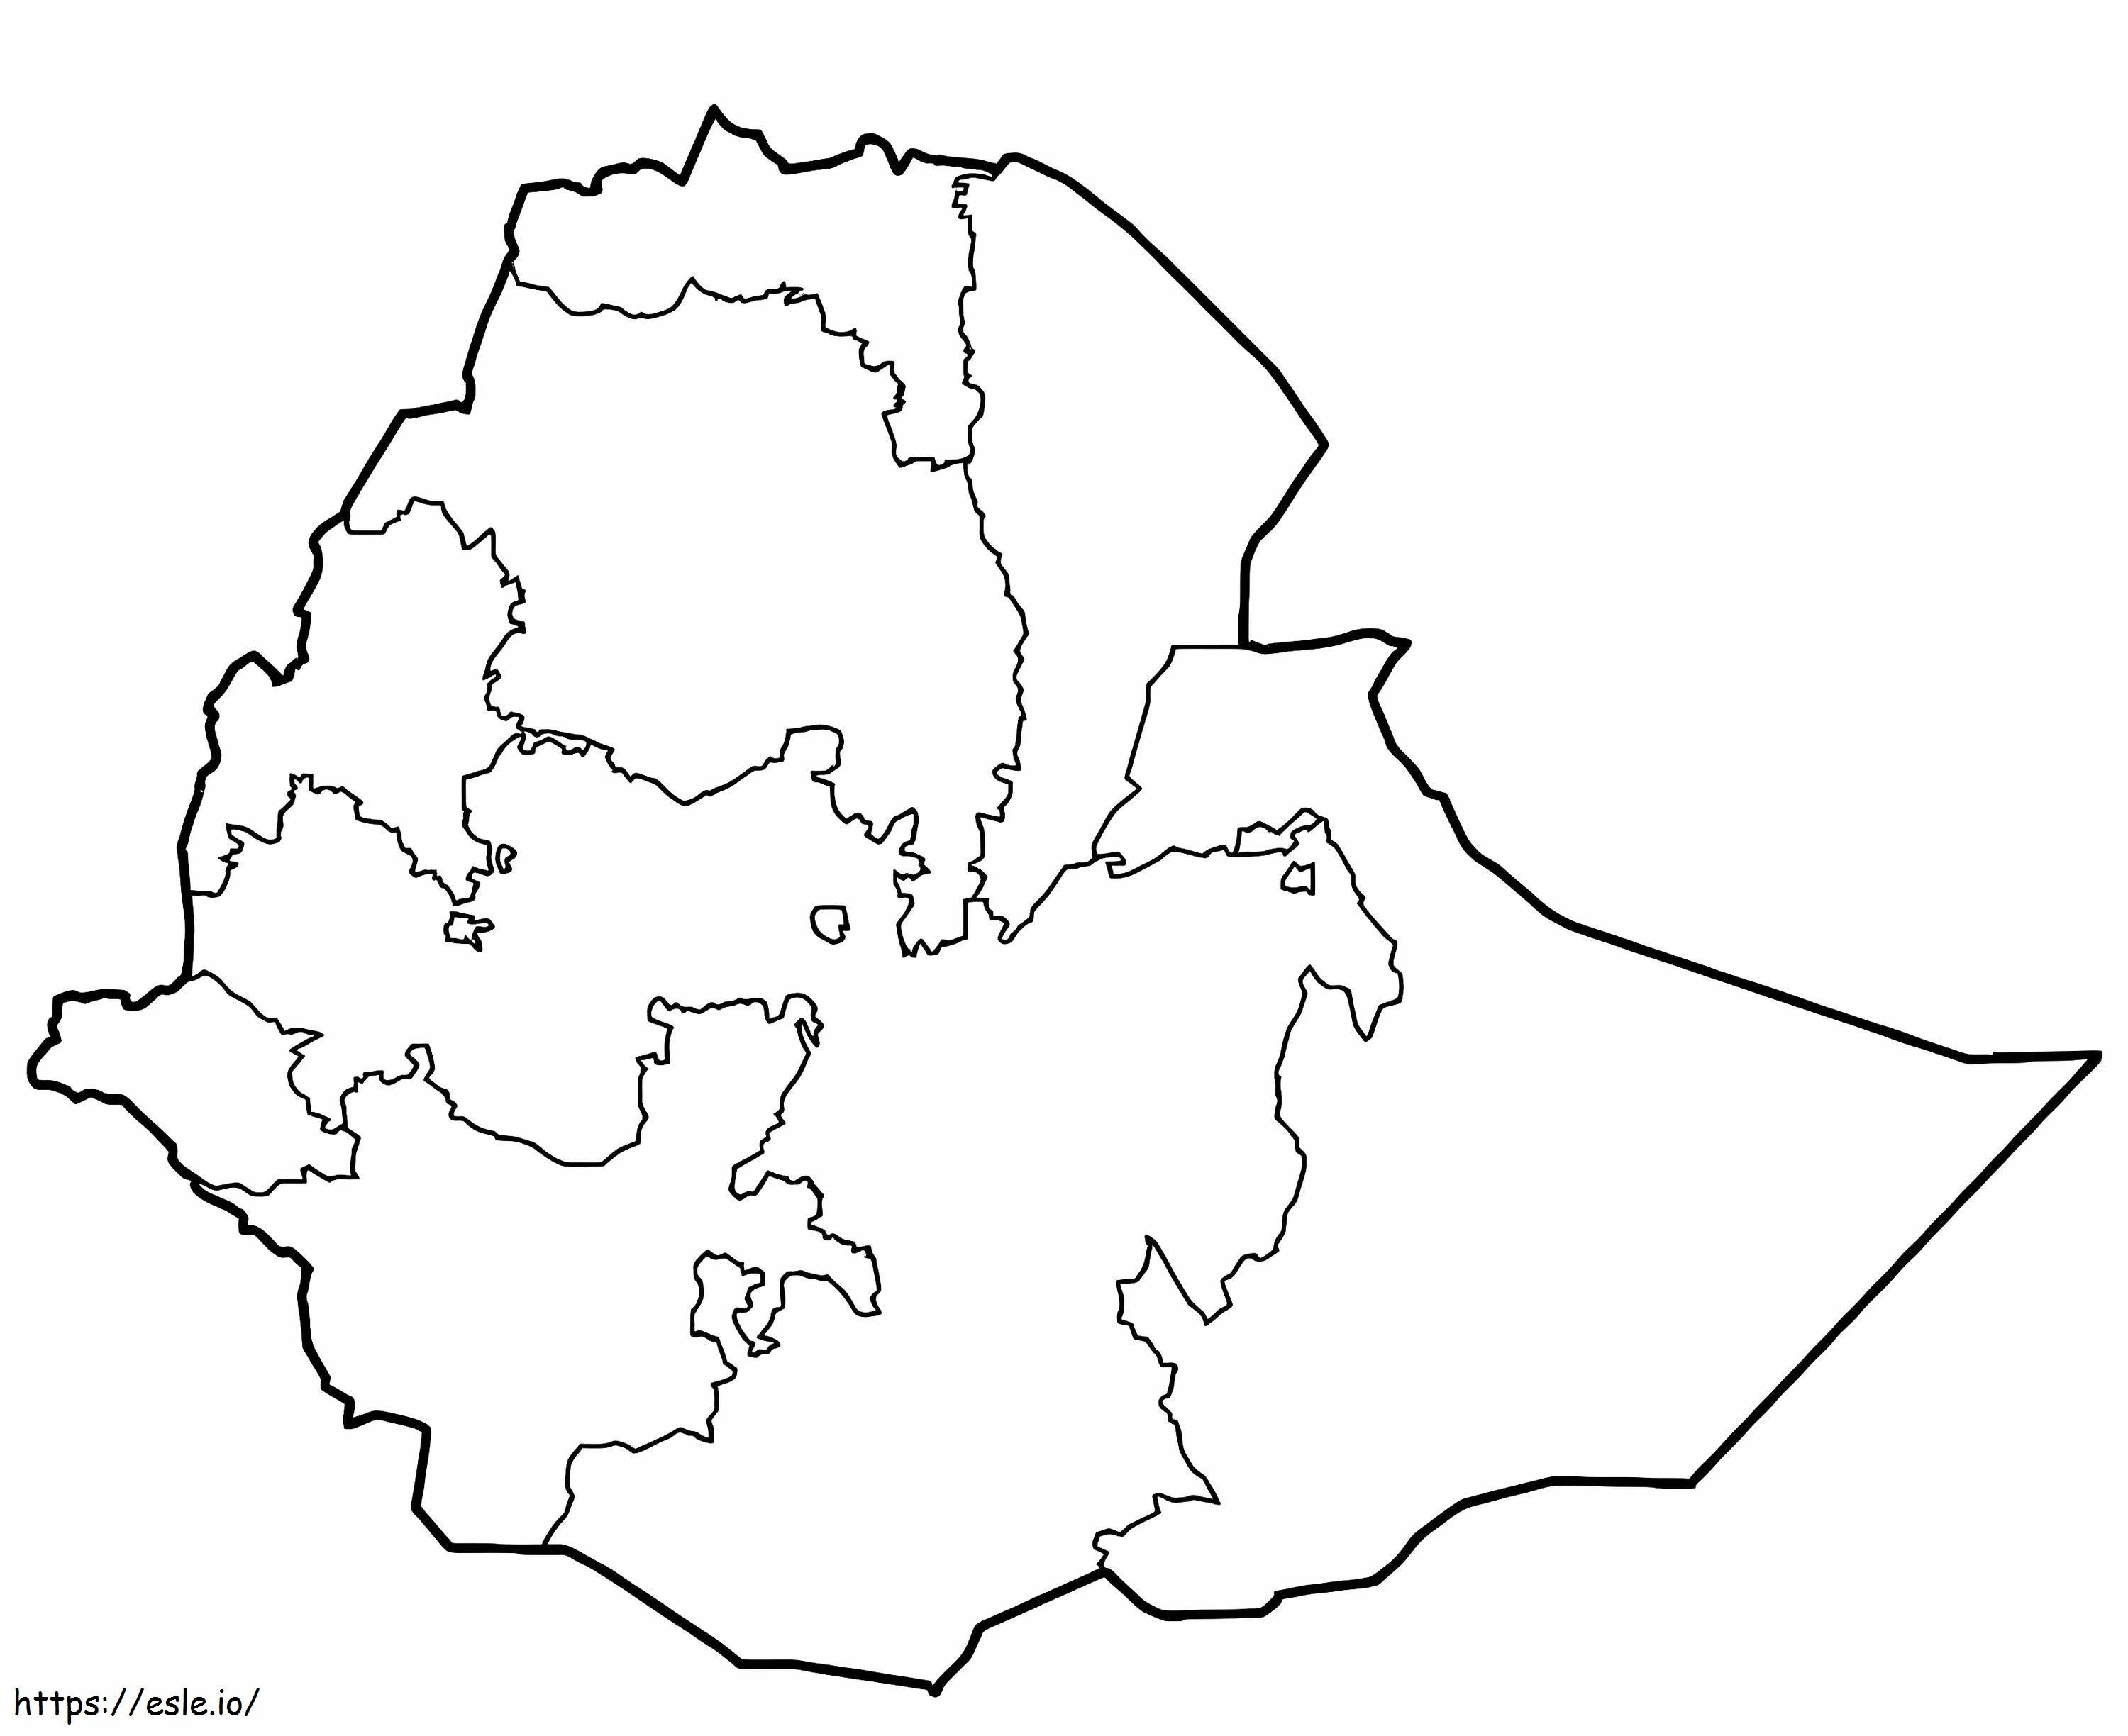 Mappa dell'Etiopia da colorare